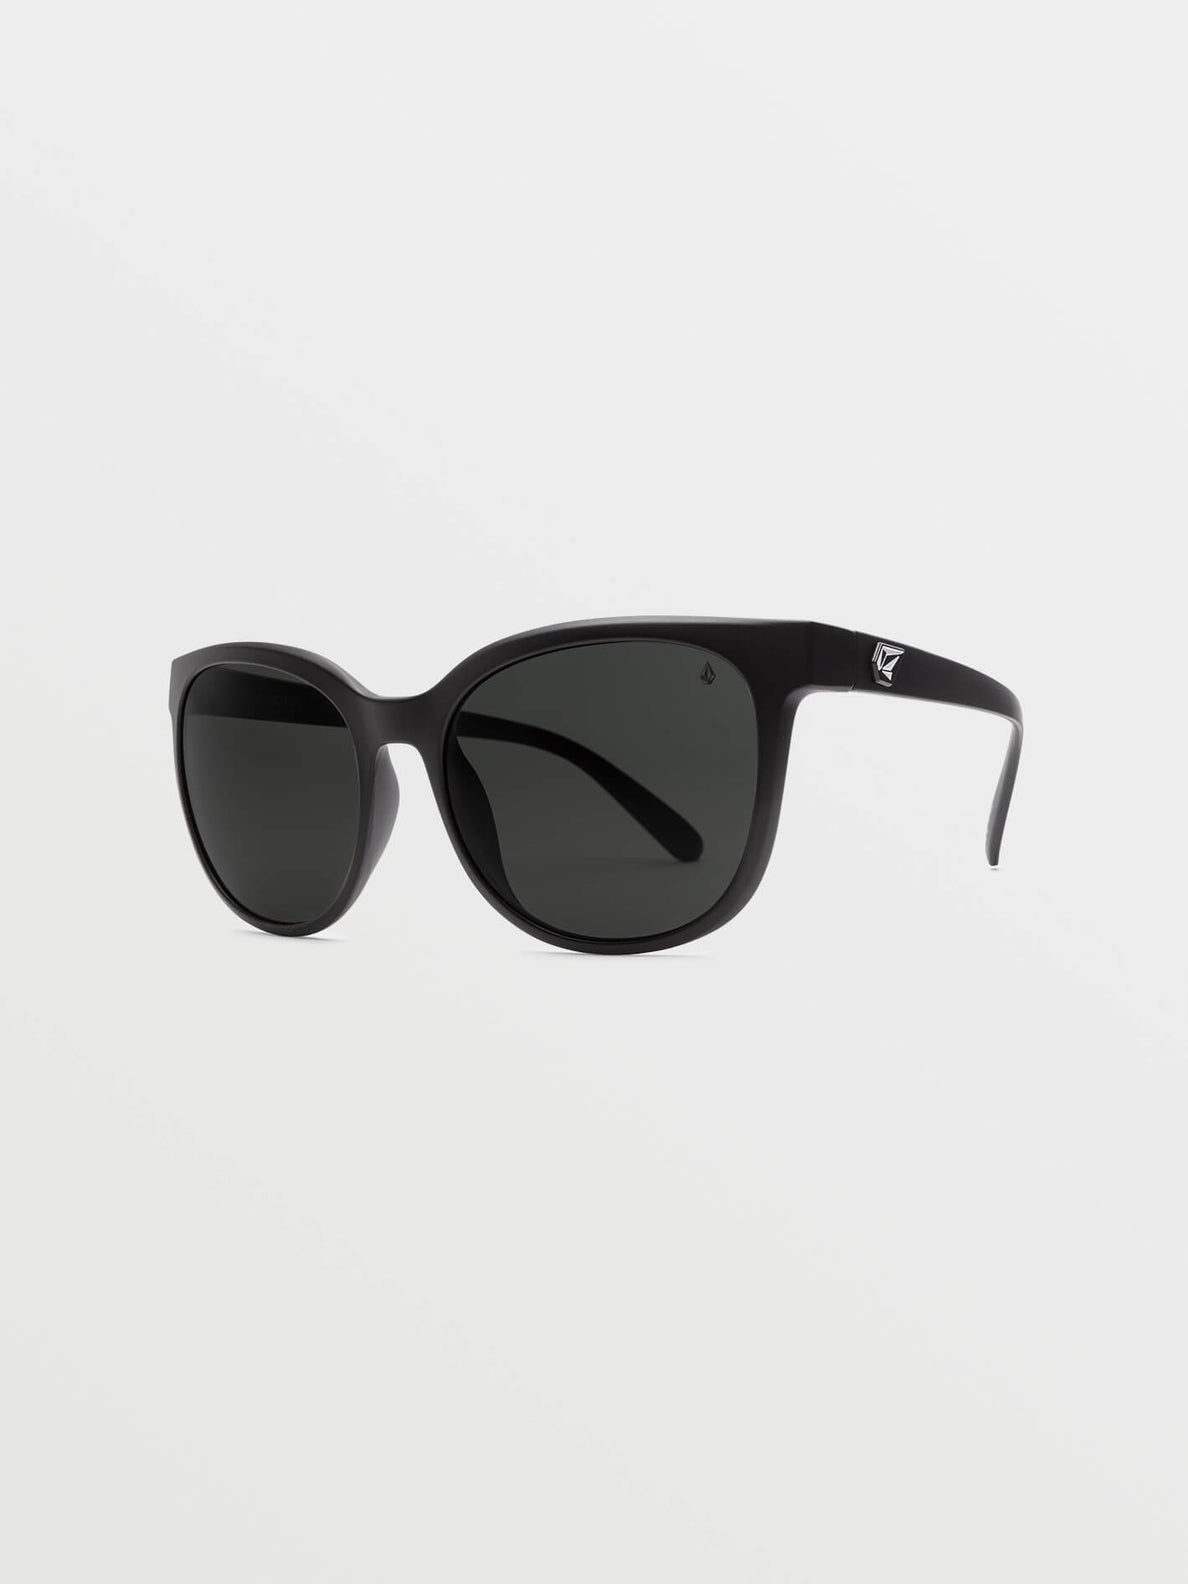 Garden Sunglasses - Matte Black/Gray Polar (VE02600102_0000) [3]